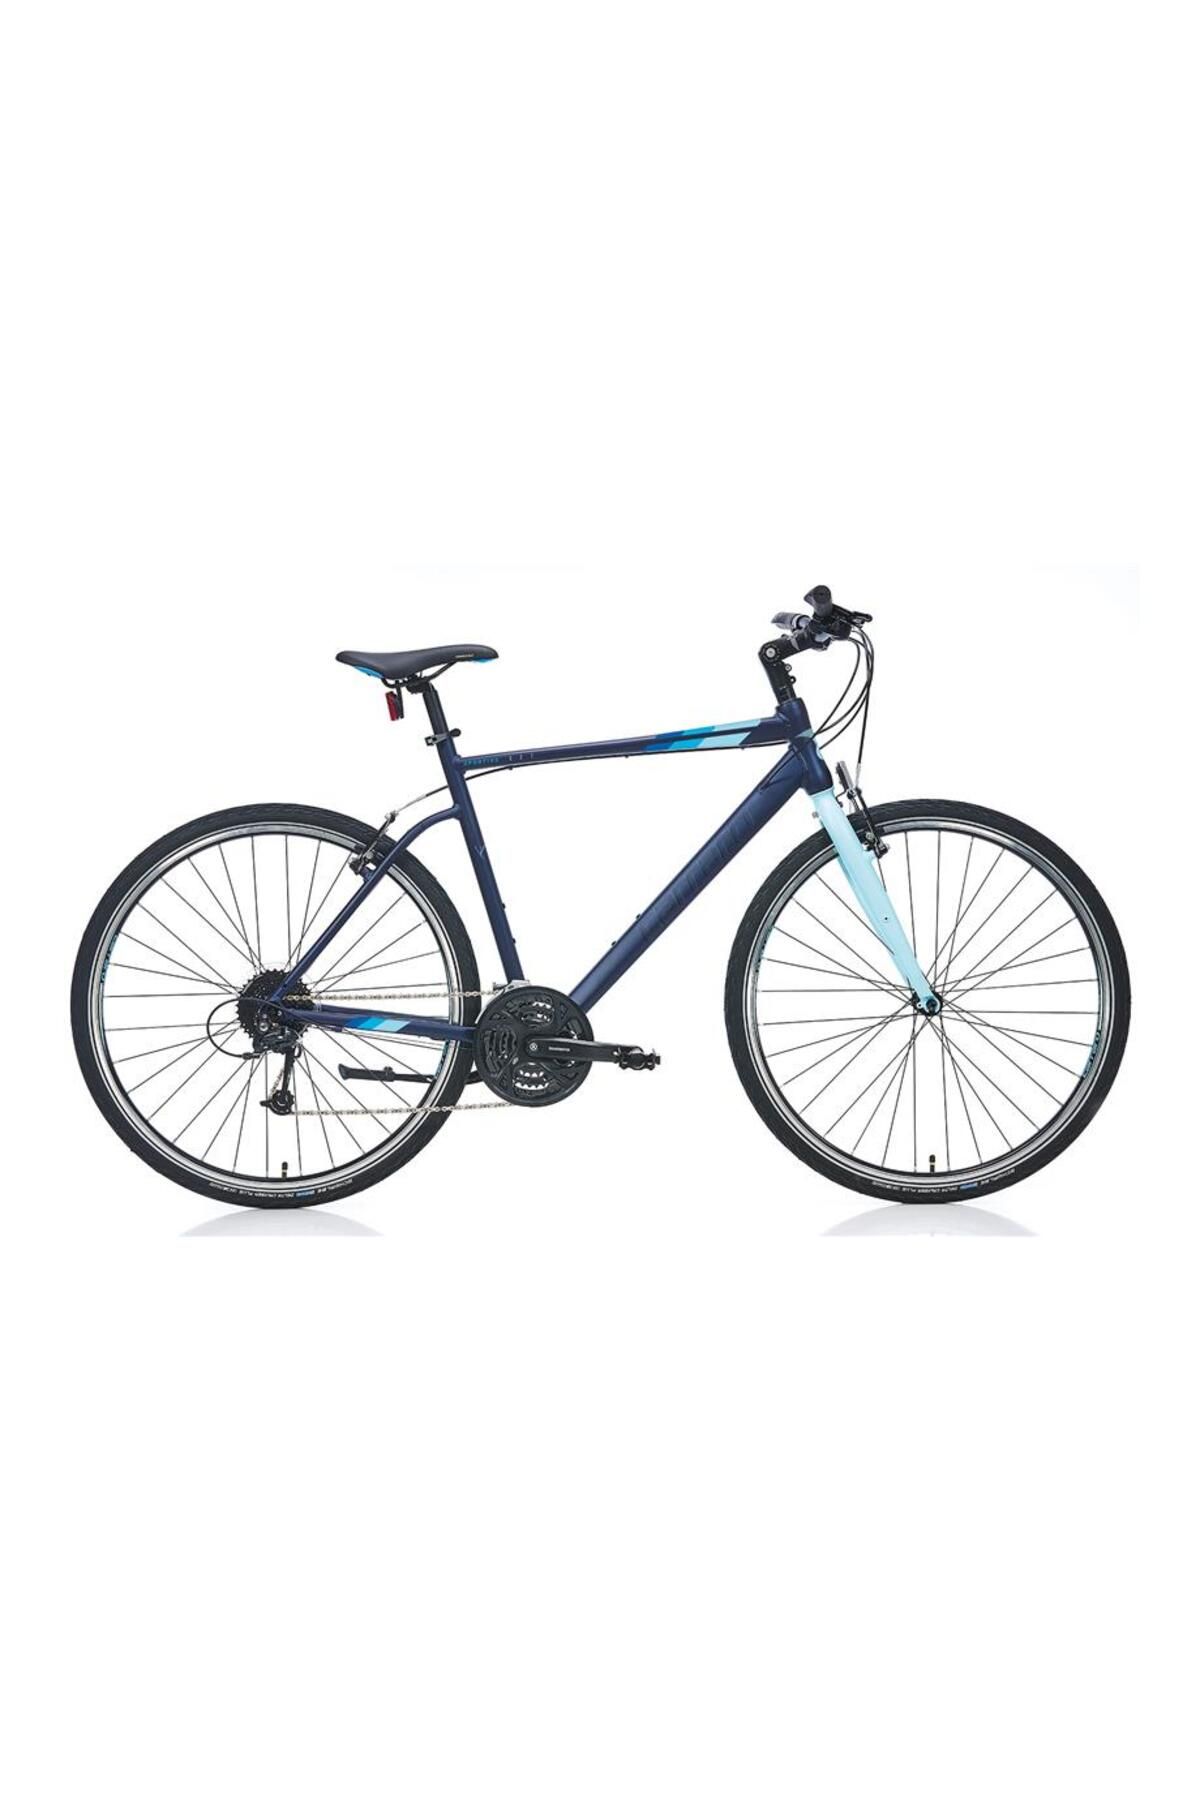 Carraro Sportıve 327 Erkek Şehir Bisikleti 400h V 28 Jant 27 Vites Mat Lacivert-açık Mavi